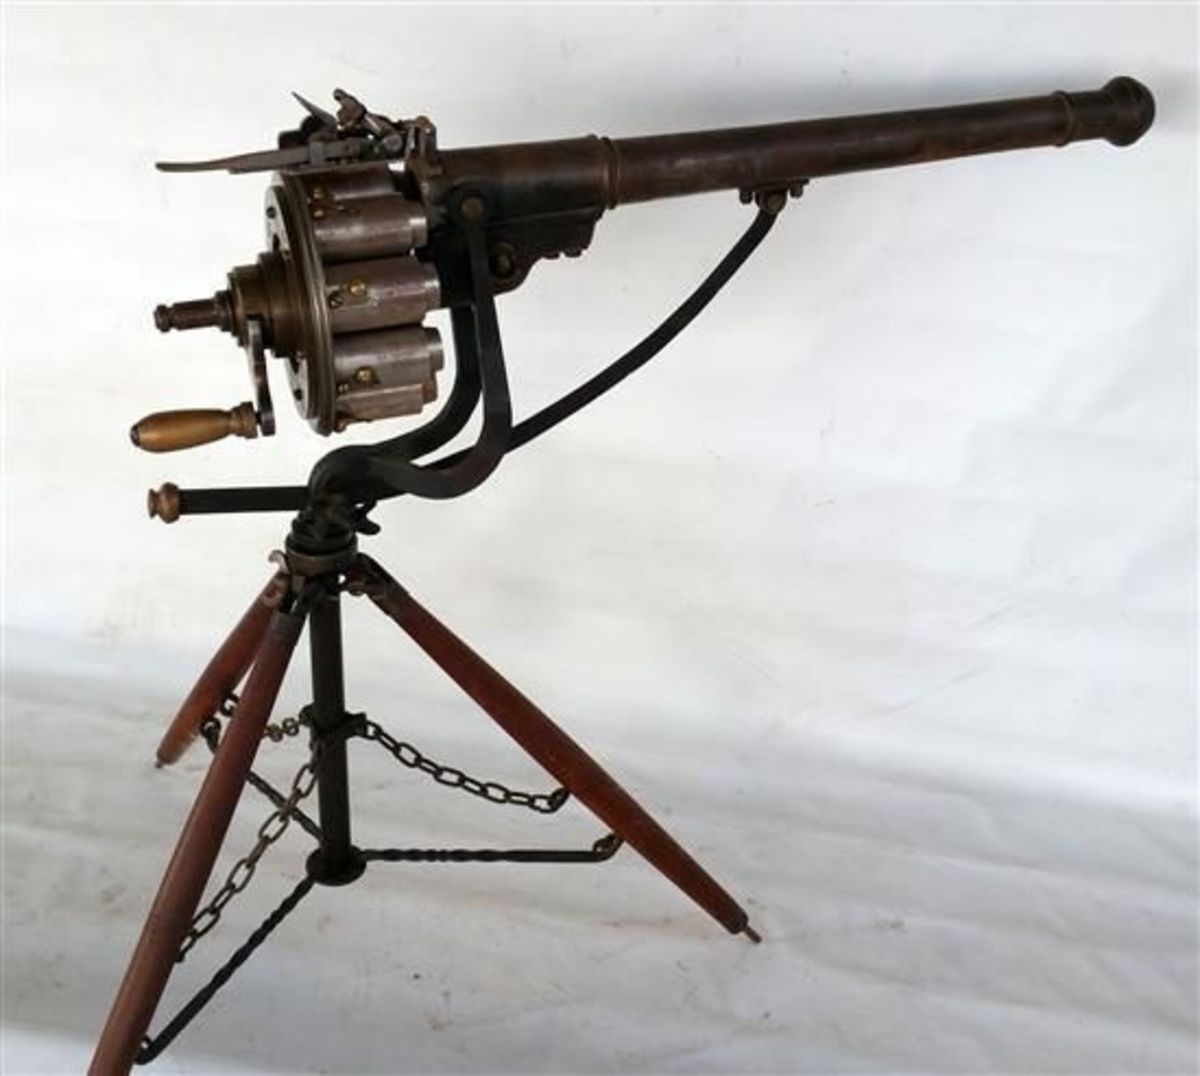 The Puckle Gun: A 1700s Machine Gun